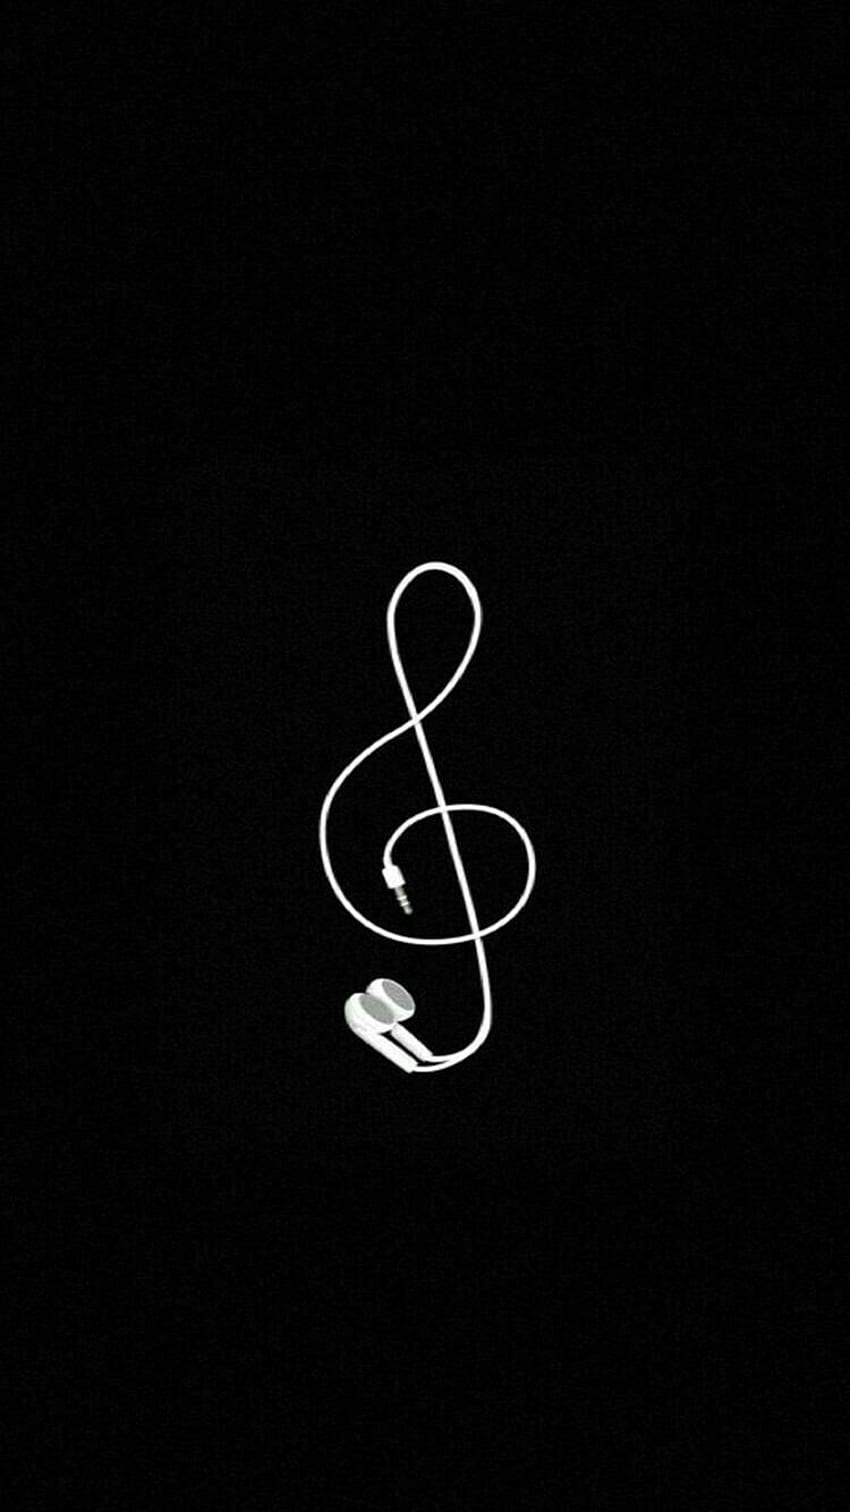 Musik sederhana treble clef earphone hitam dan putih iPhone, Android wallpaper ponsel HD